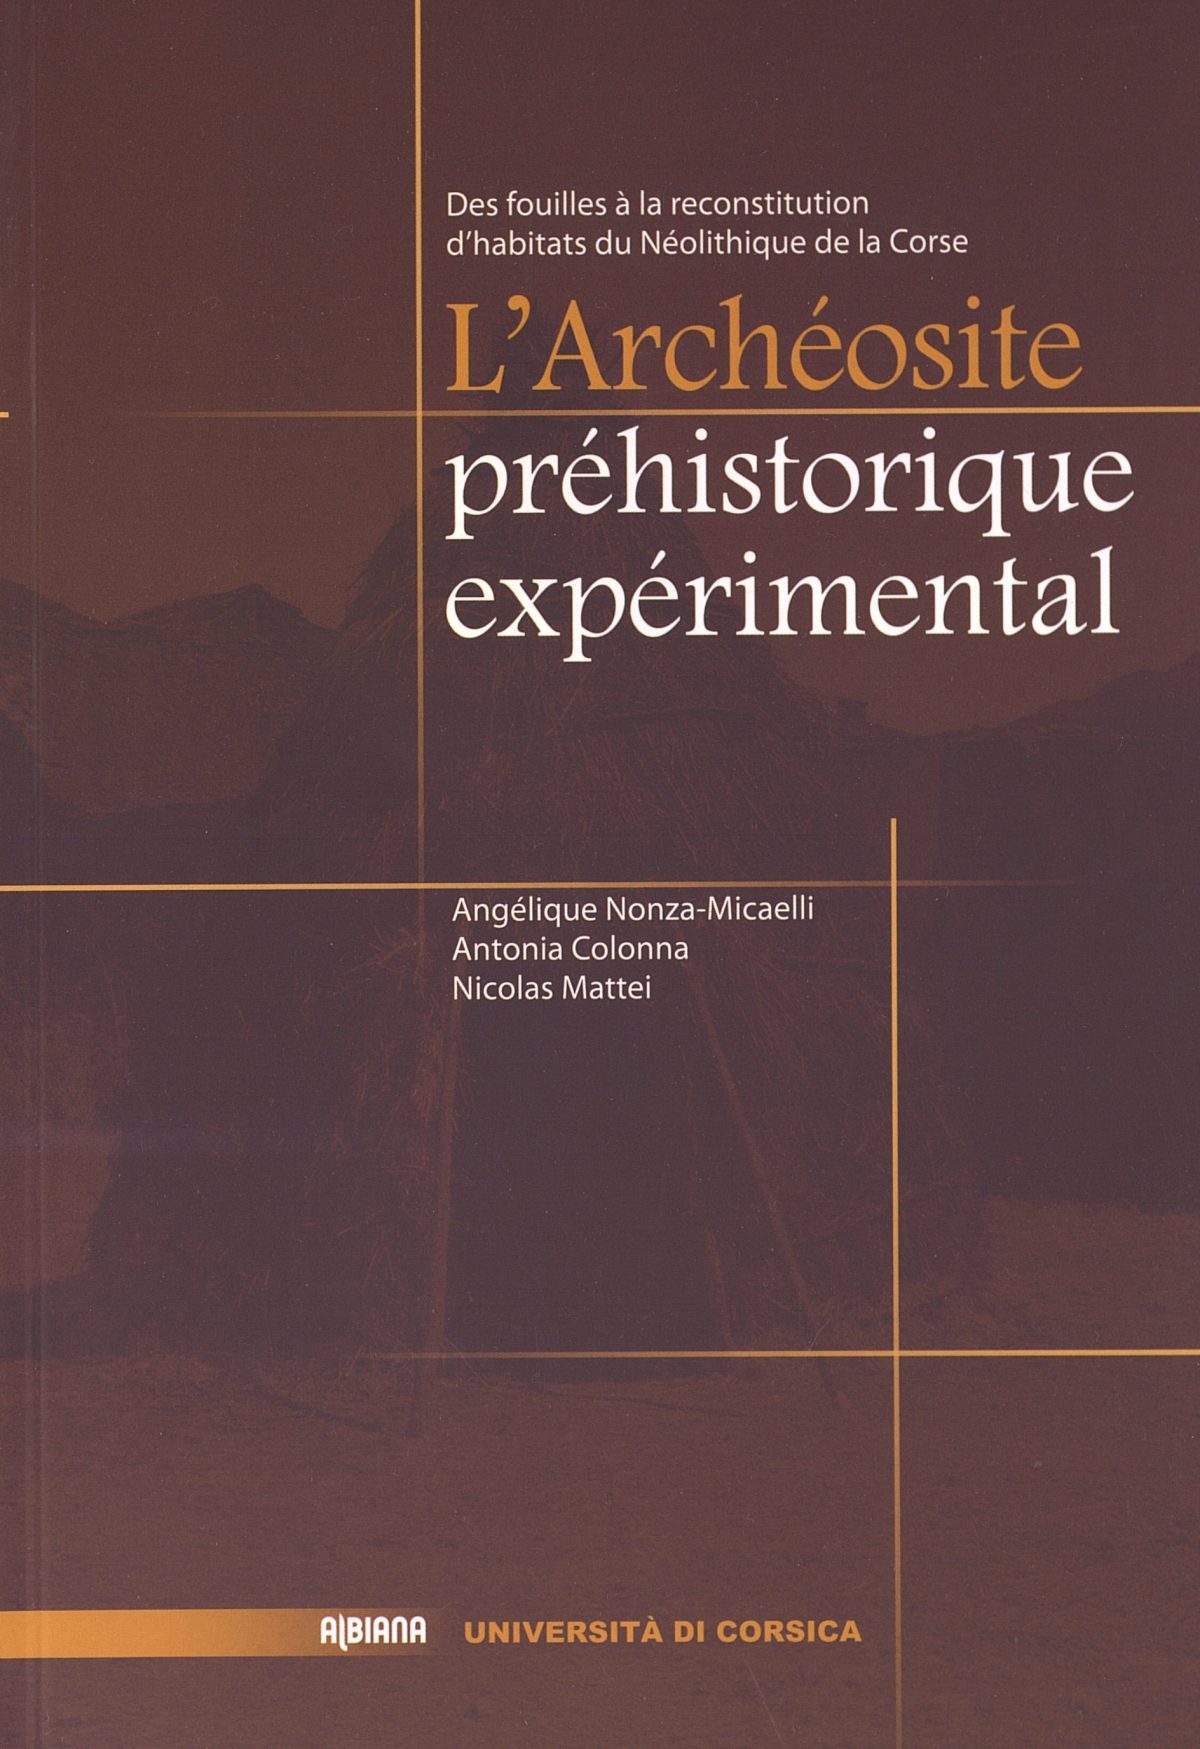 L’Archéosite préhistorique expérimental, des fouilles à la reconstitution d’habitats du Néolithique de la Corse, Ajaccio : Éditions Albiana, 2013.